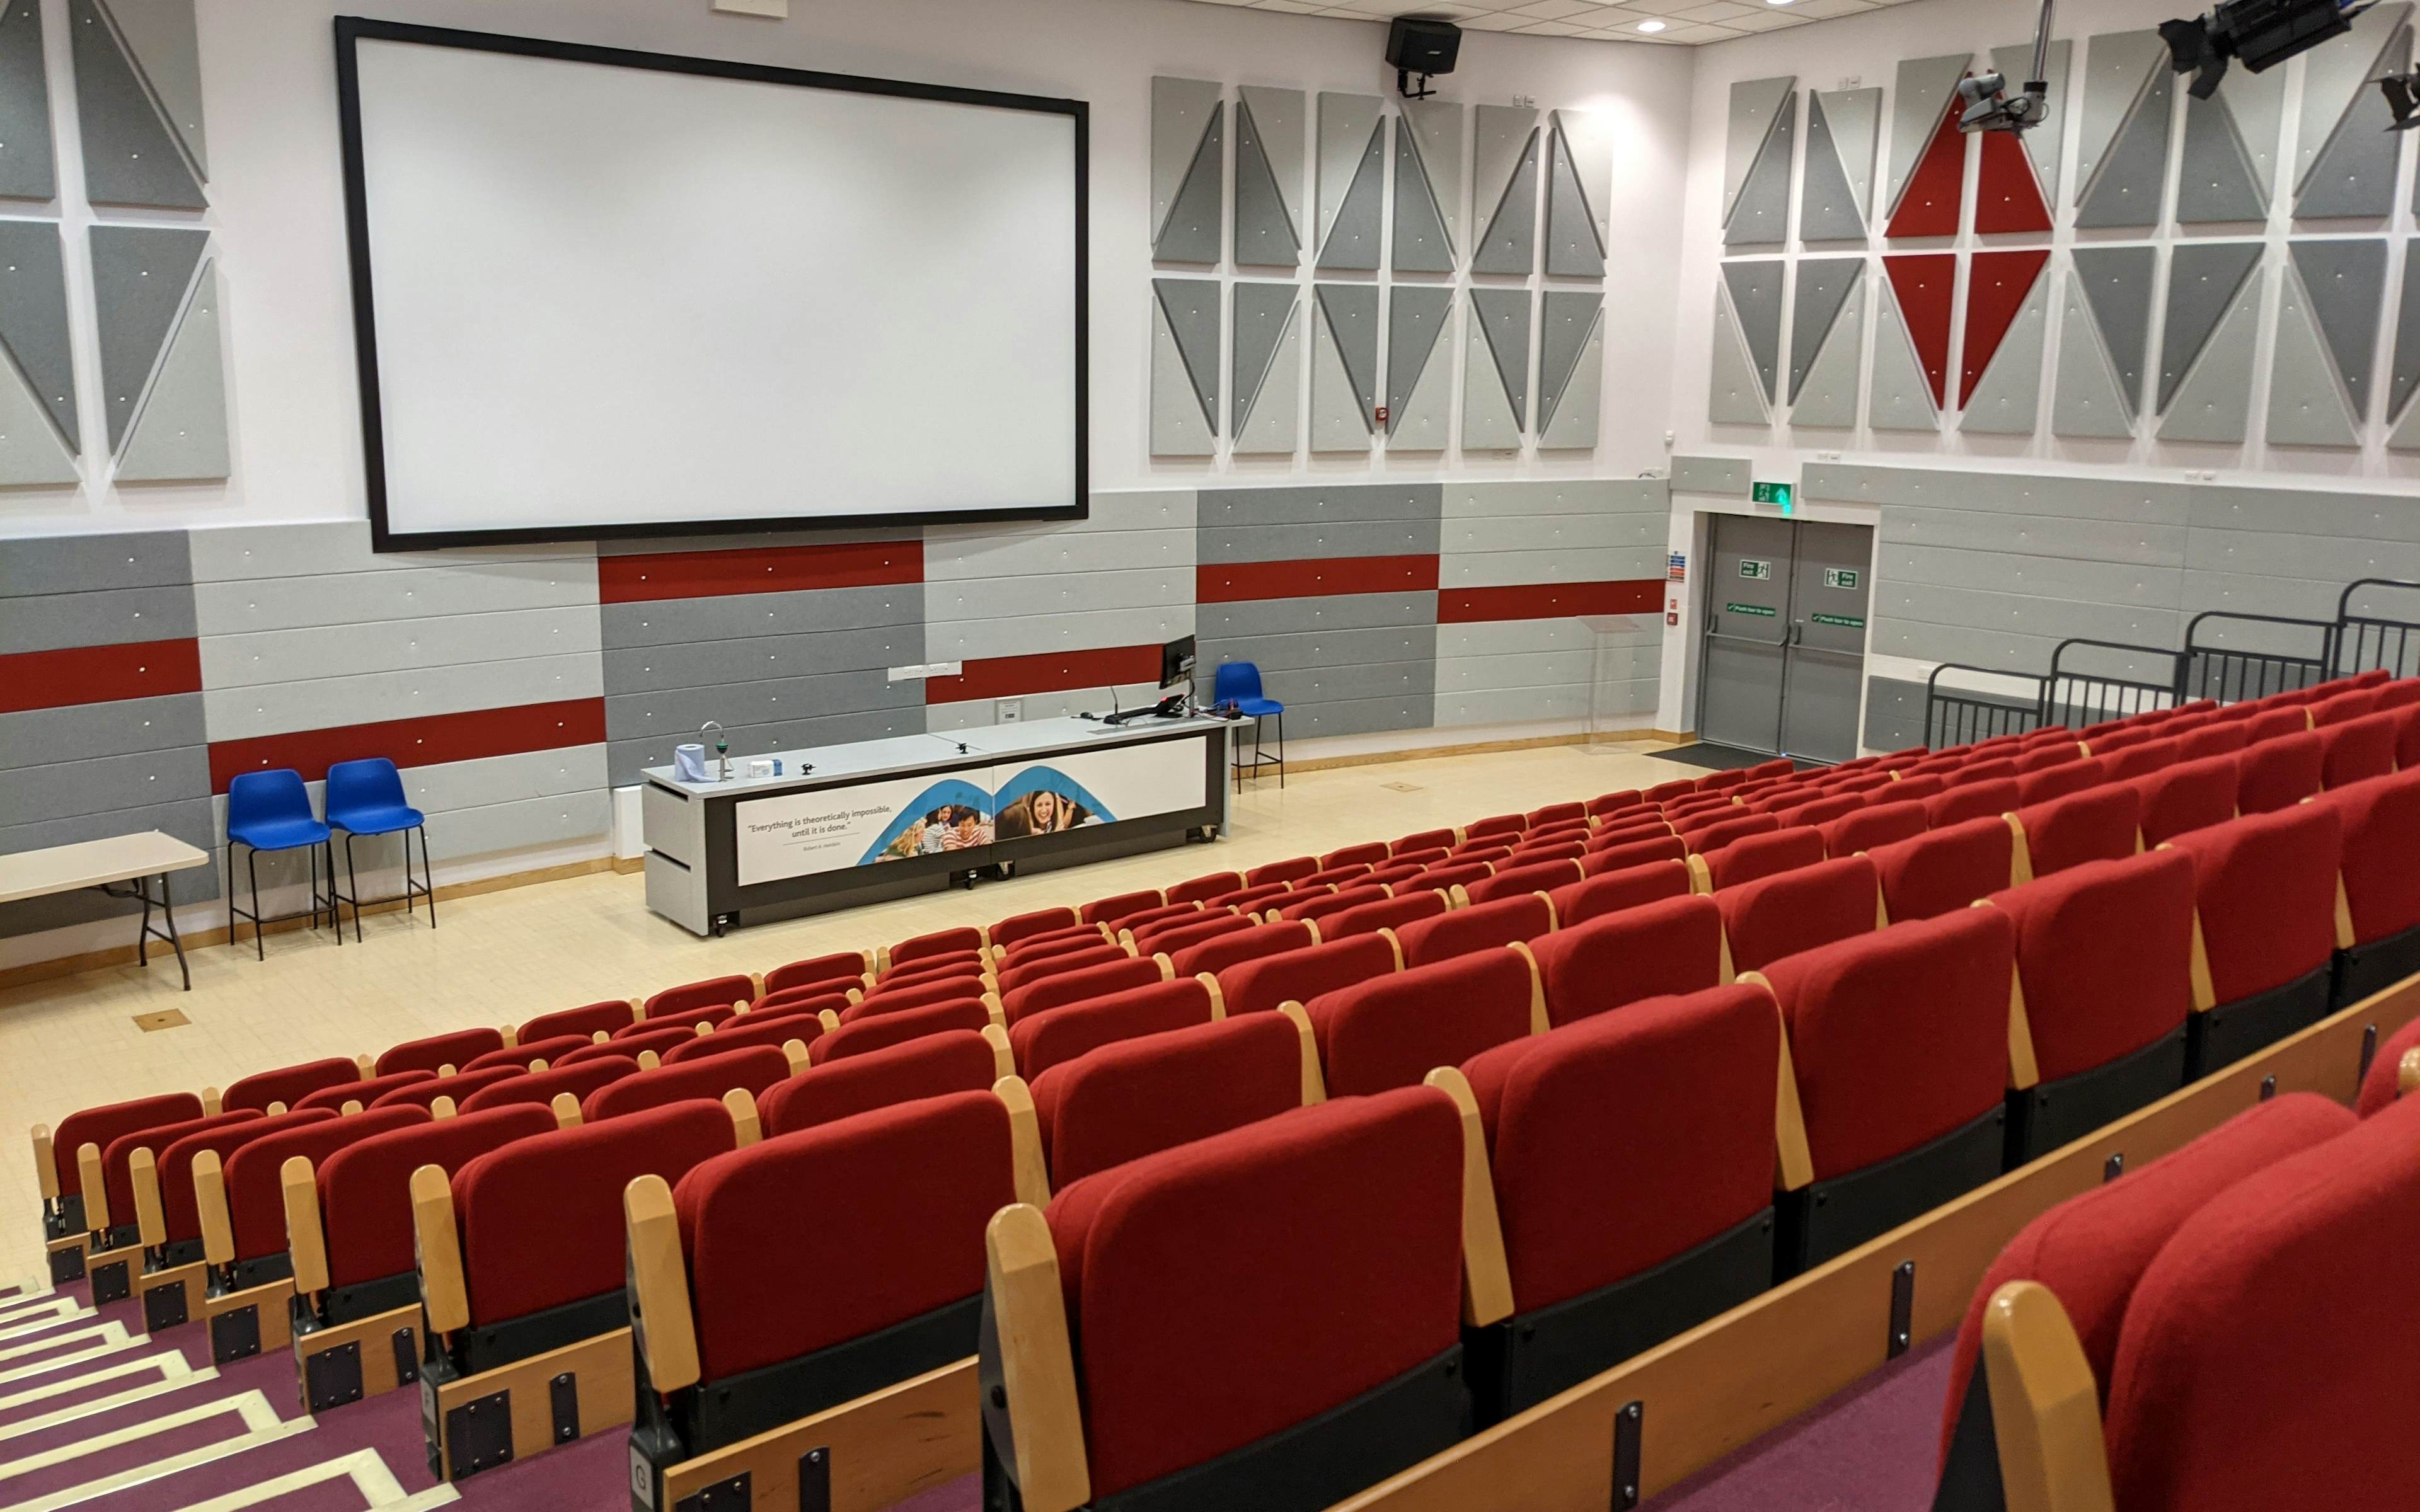 Lecture theatre - image